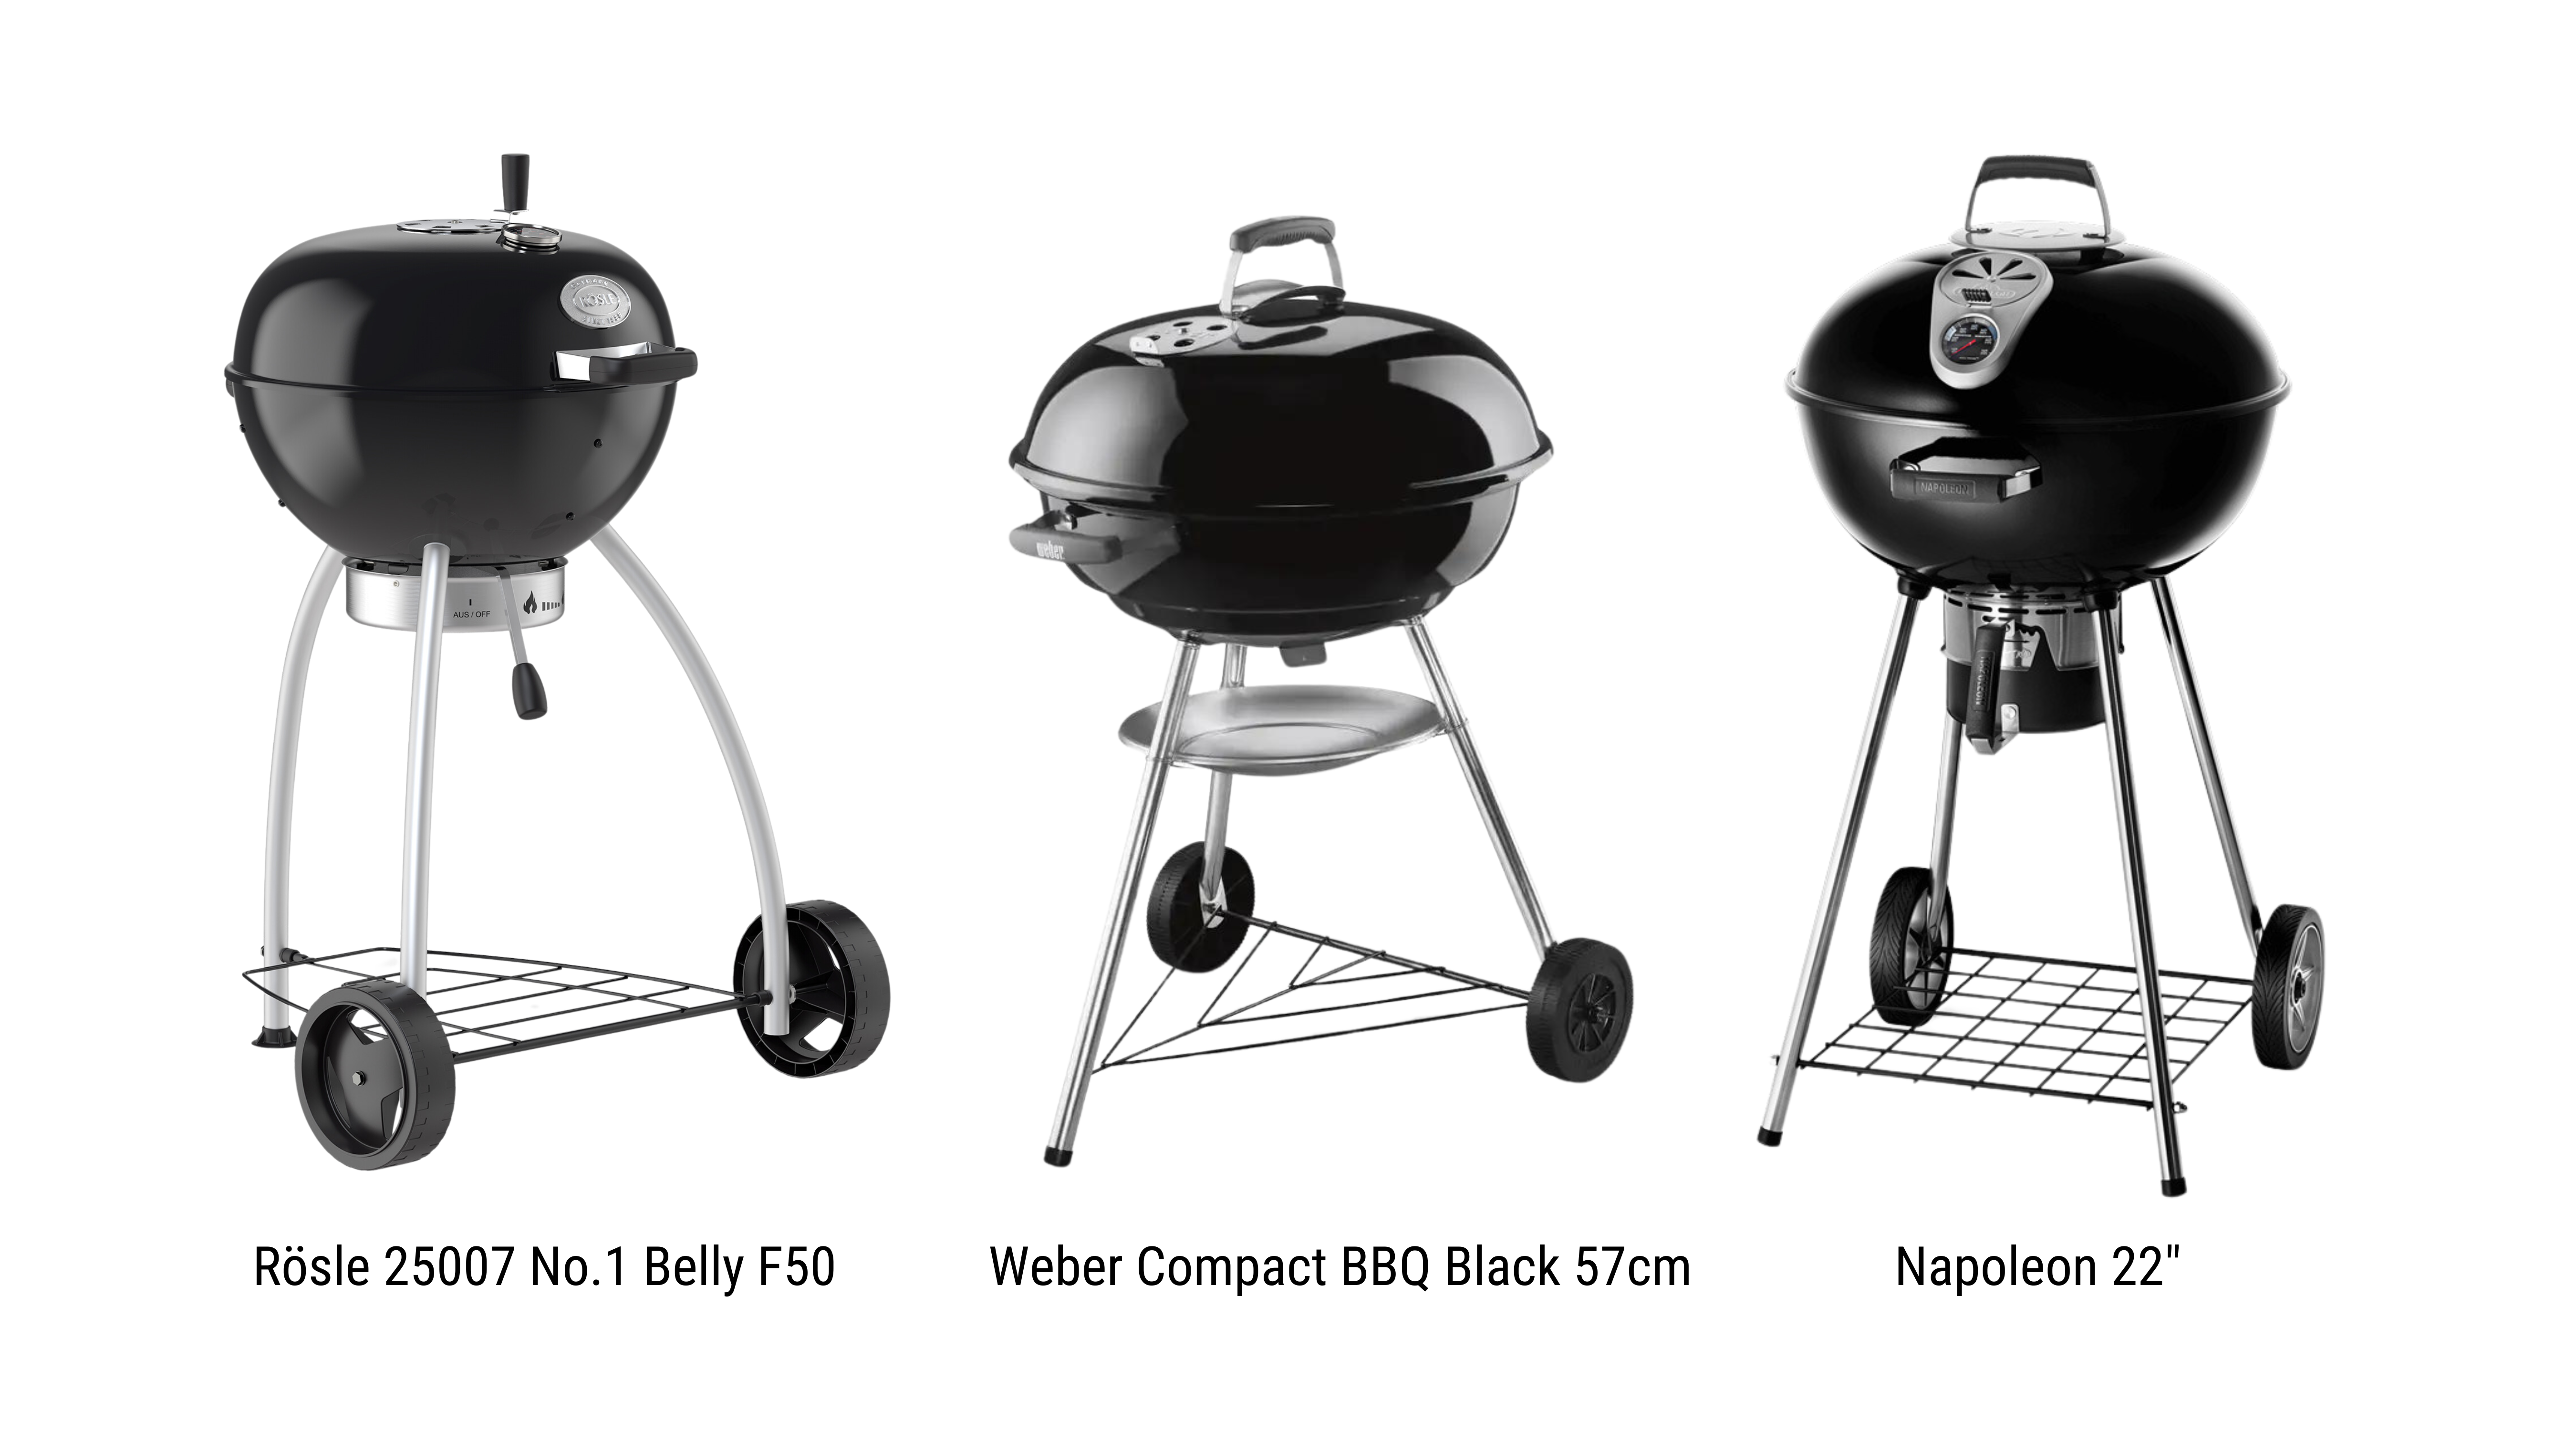 So sánh: Bếp nướng than hoa Rösle 25007 No.1 Belly F50 vs Bếp Weber Compact BBQ Black 57cm vs Bếp Napoleon 22"